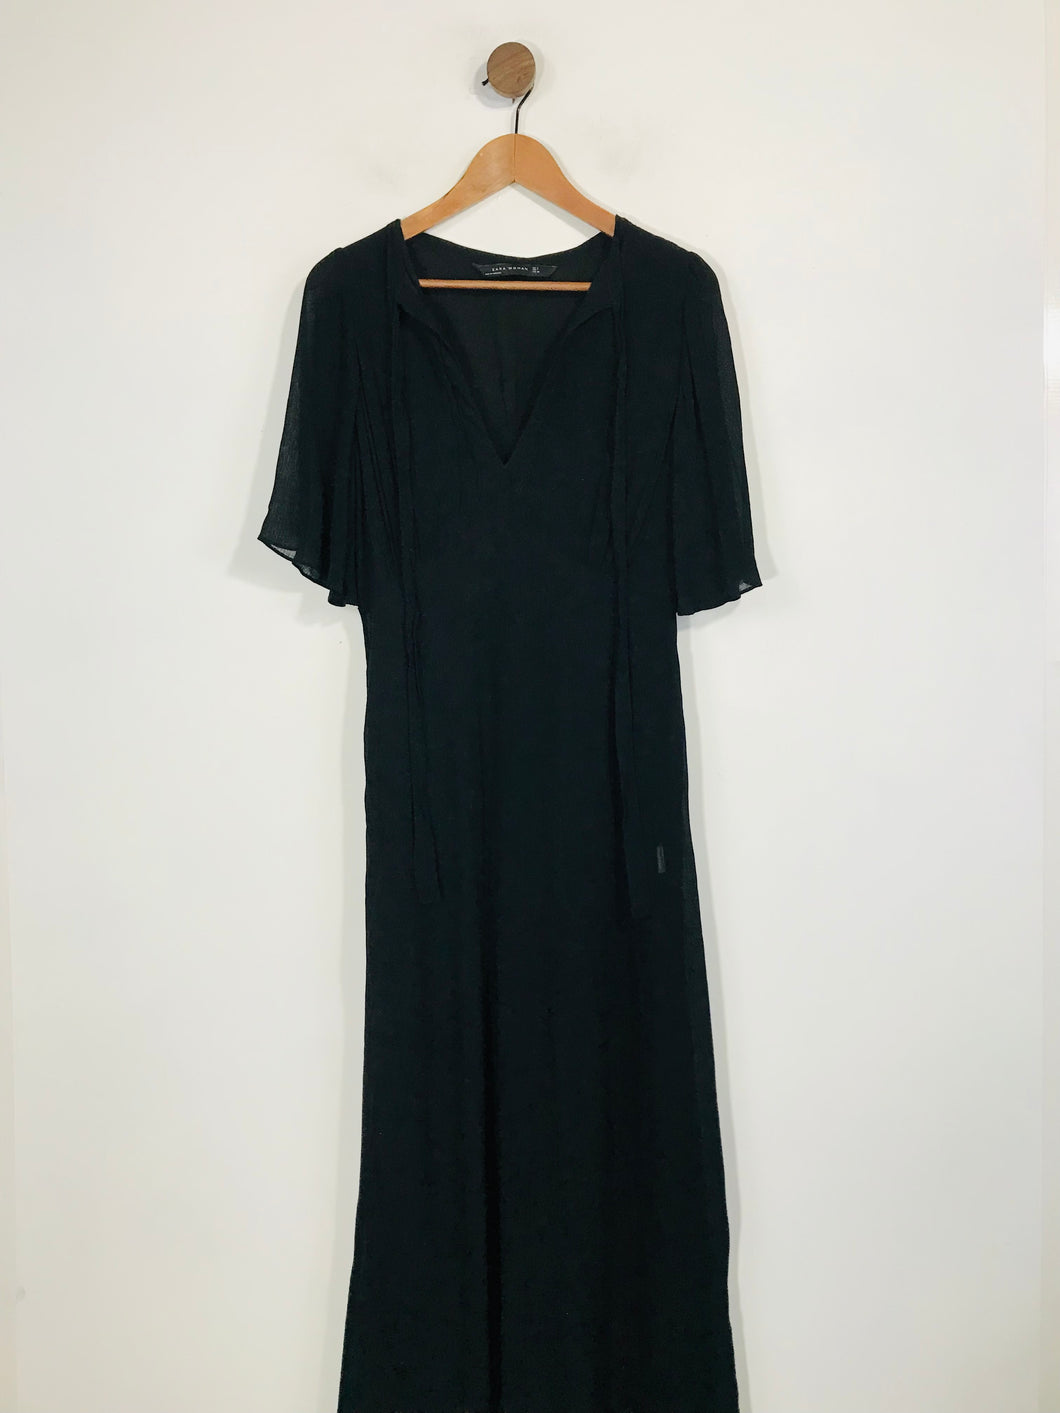 Zara Women's Maxi Dress | M UK10-12 | Black